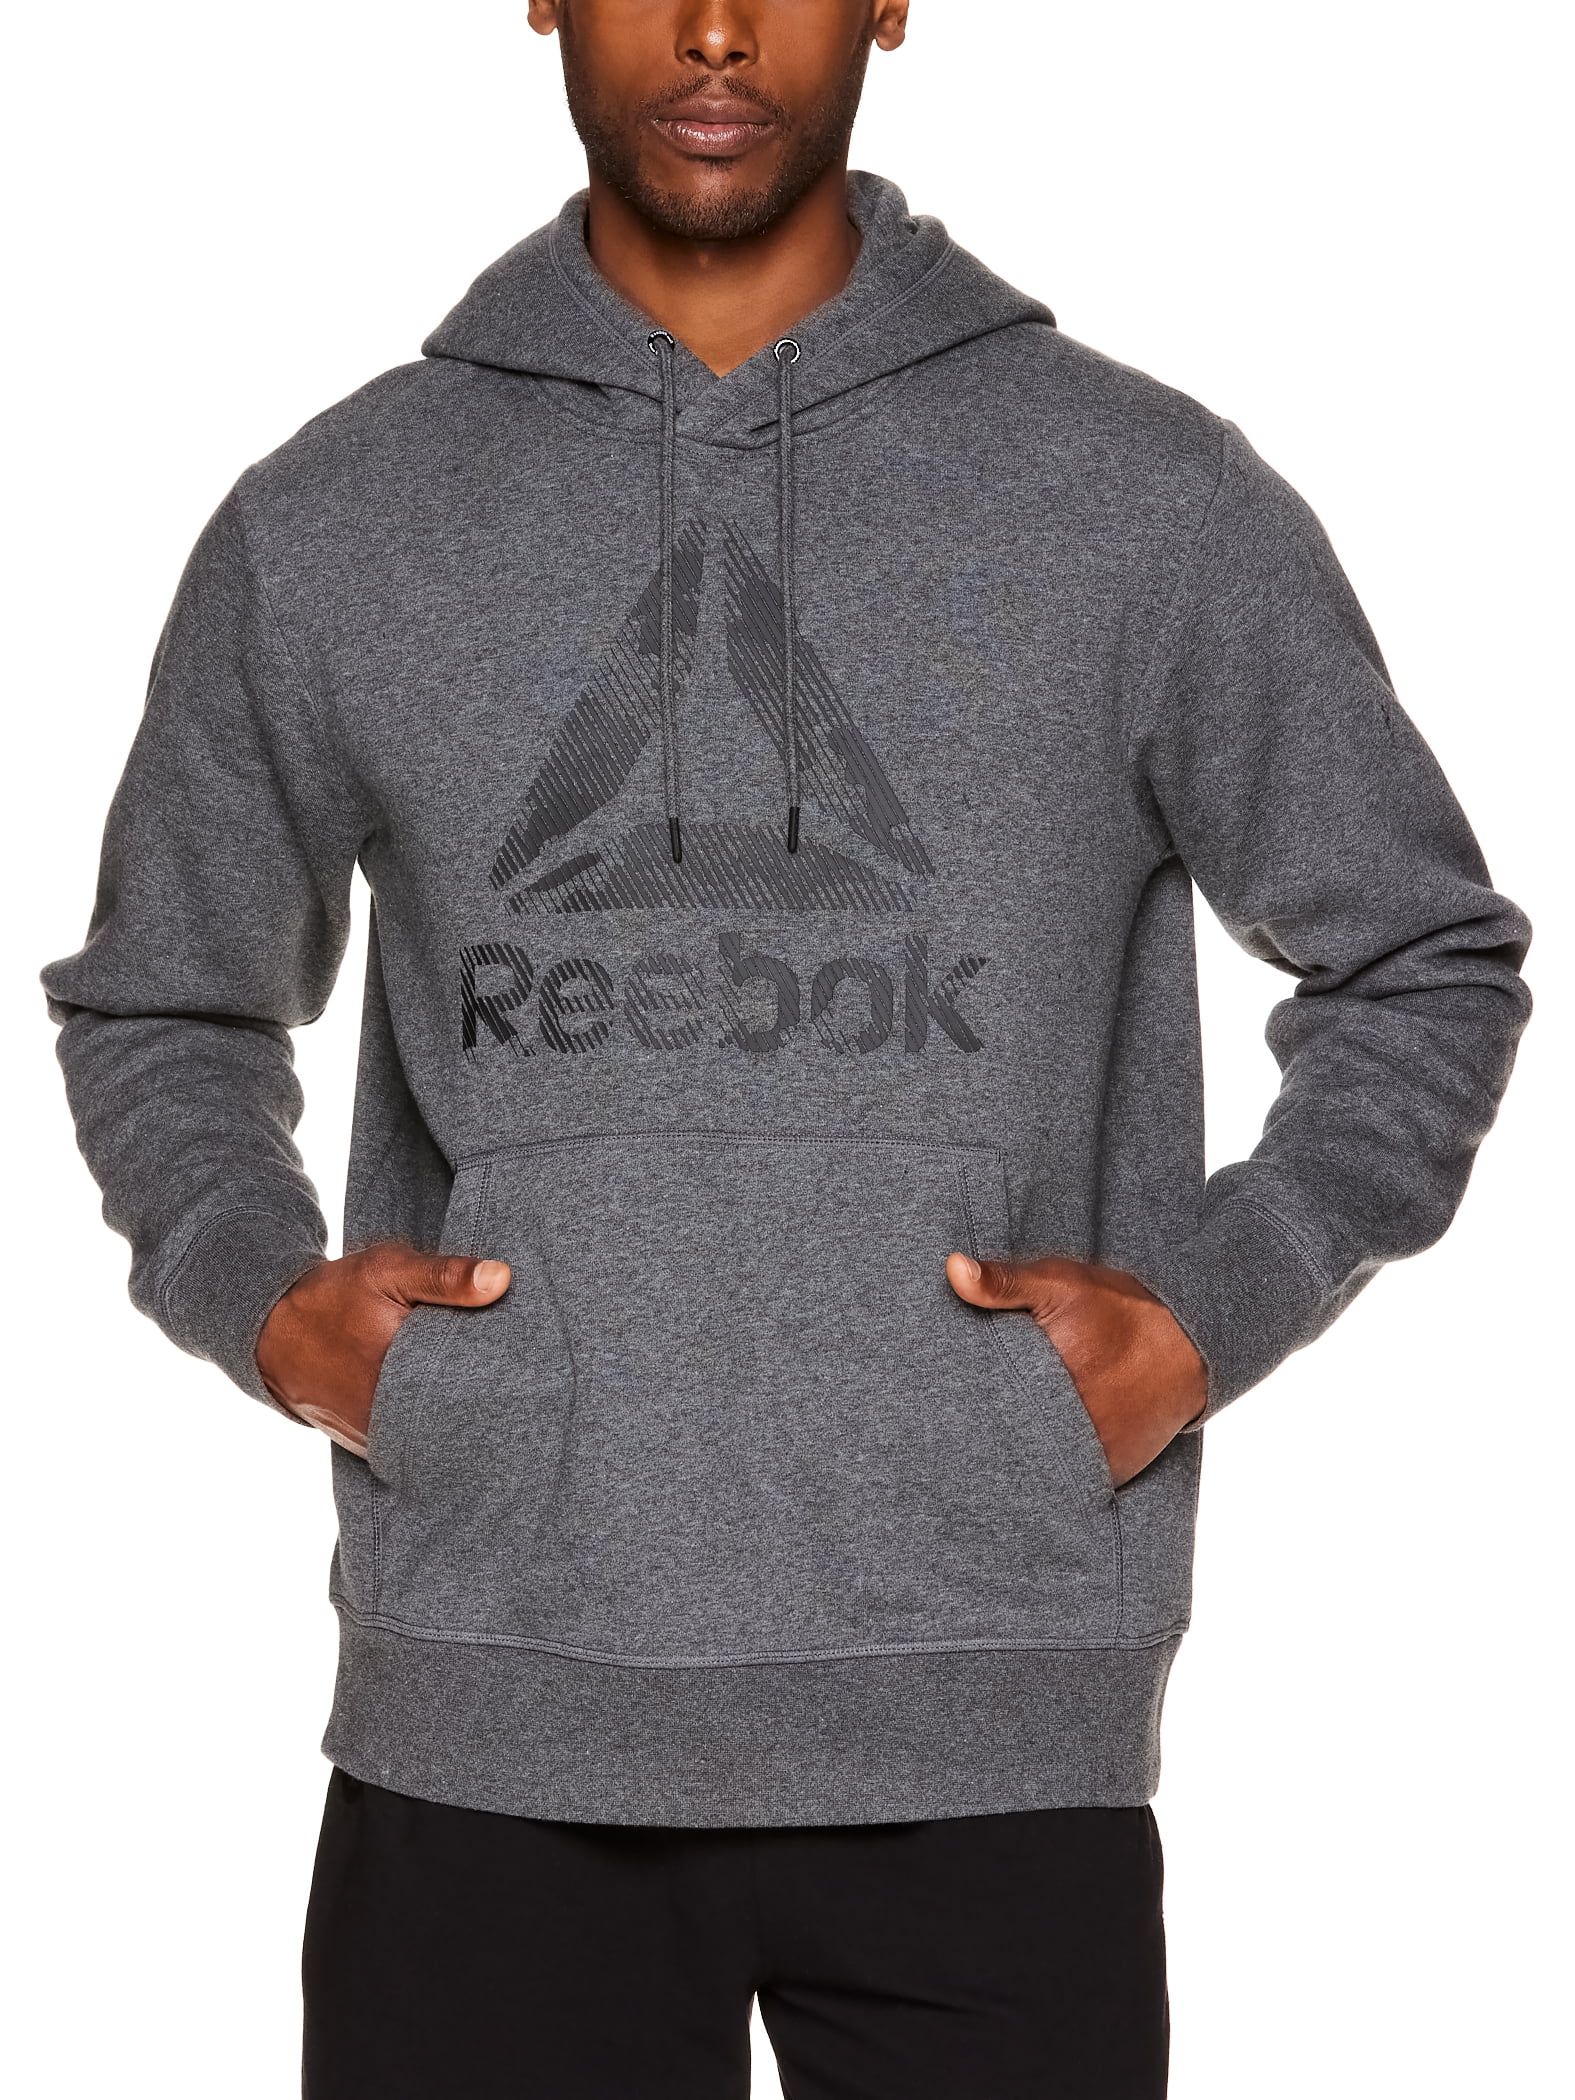 Reebok Men's Camo Fleece Hoodie, up to Size 3XL - Walmart.com